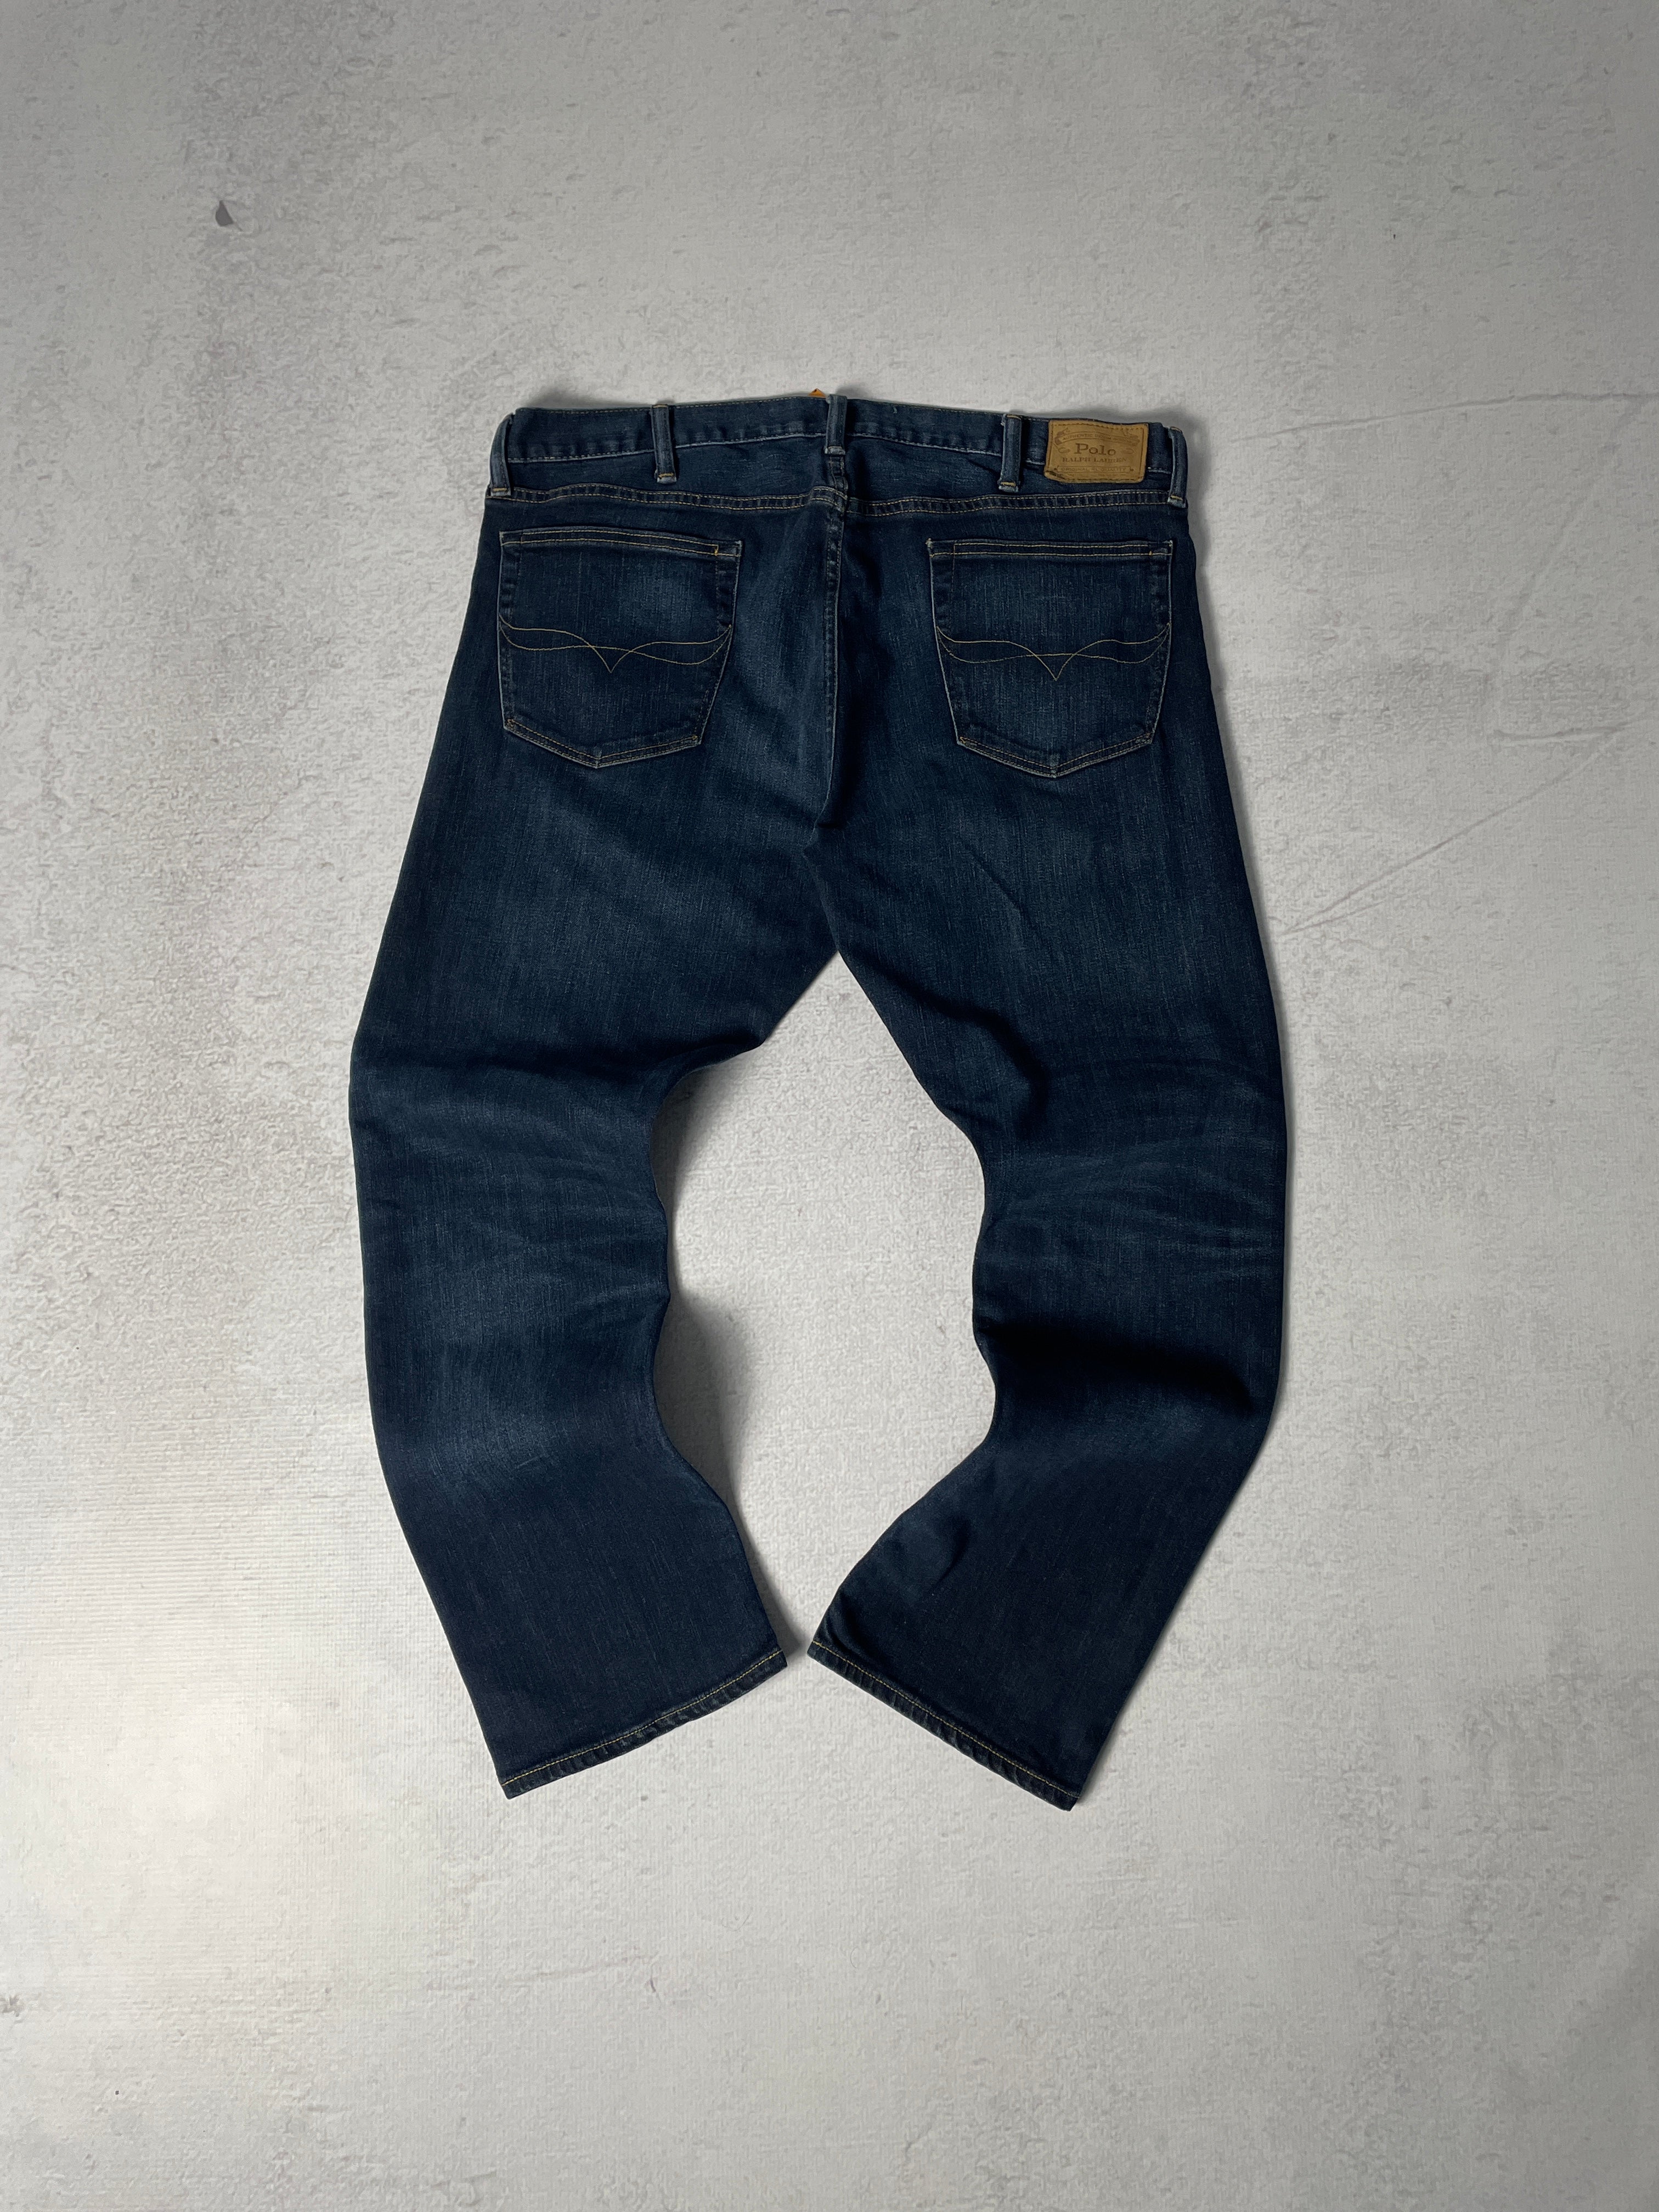 Polo Ralph Lauren Jeans - Men's 38 x 30